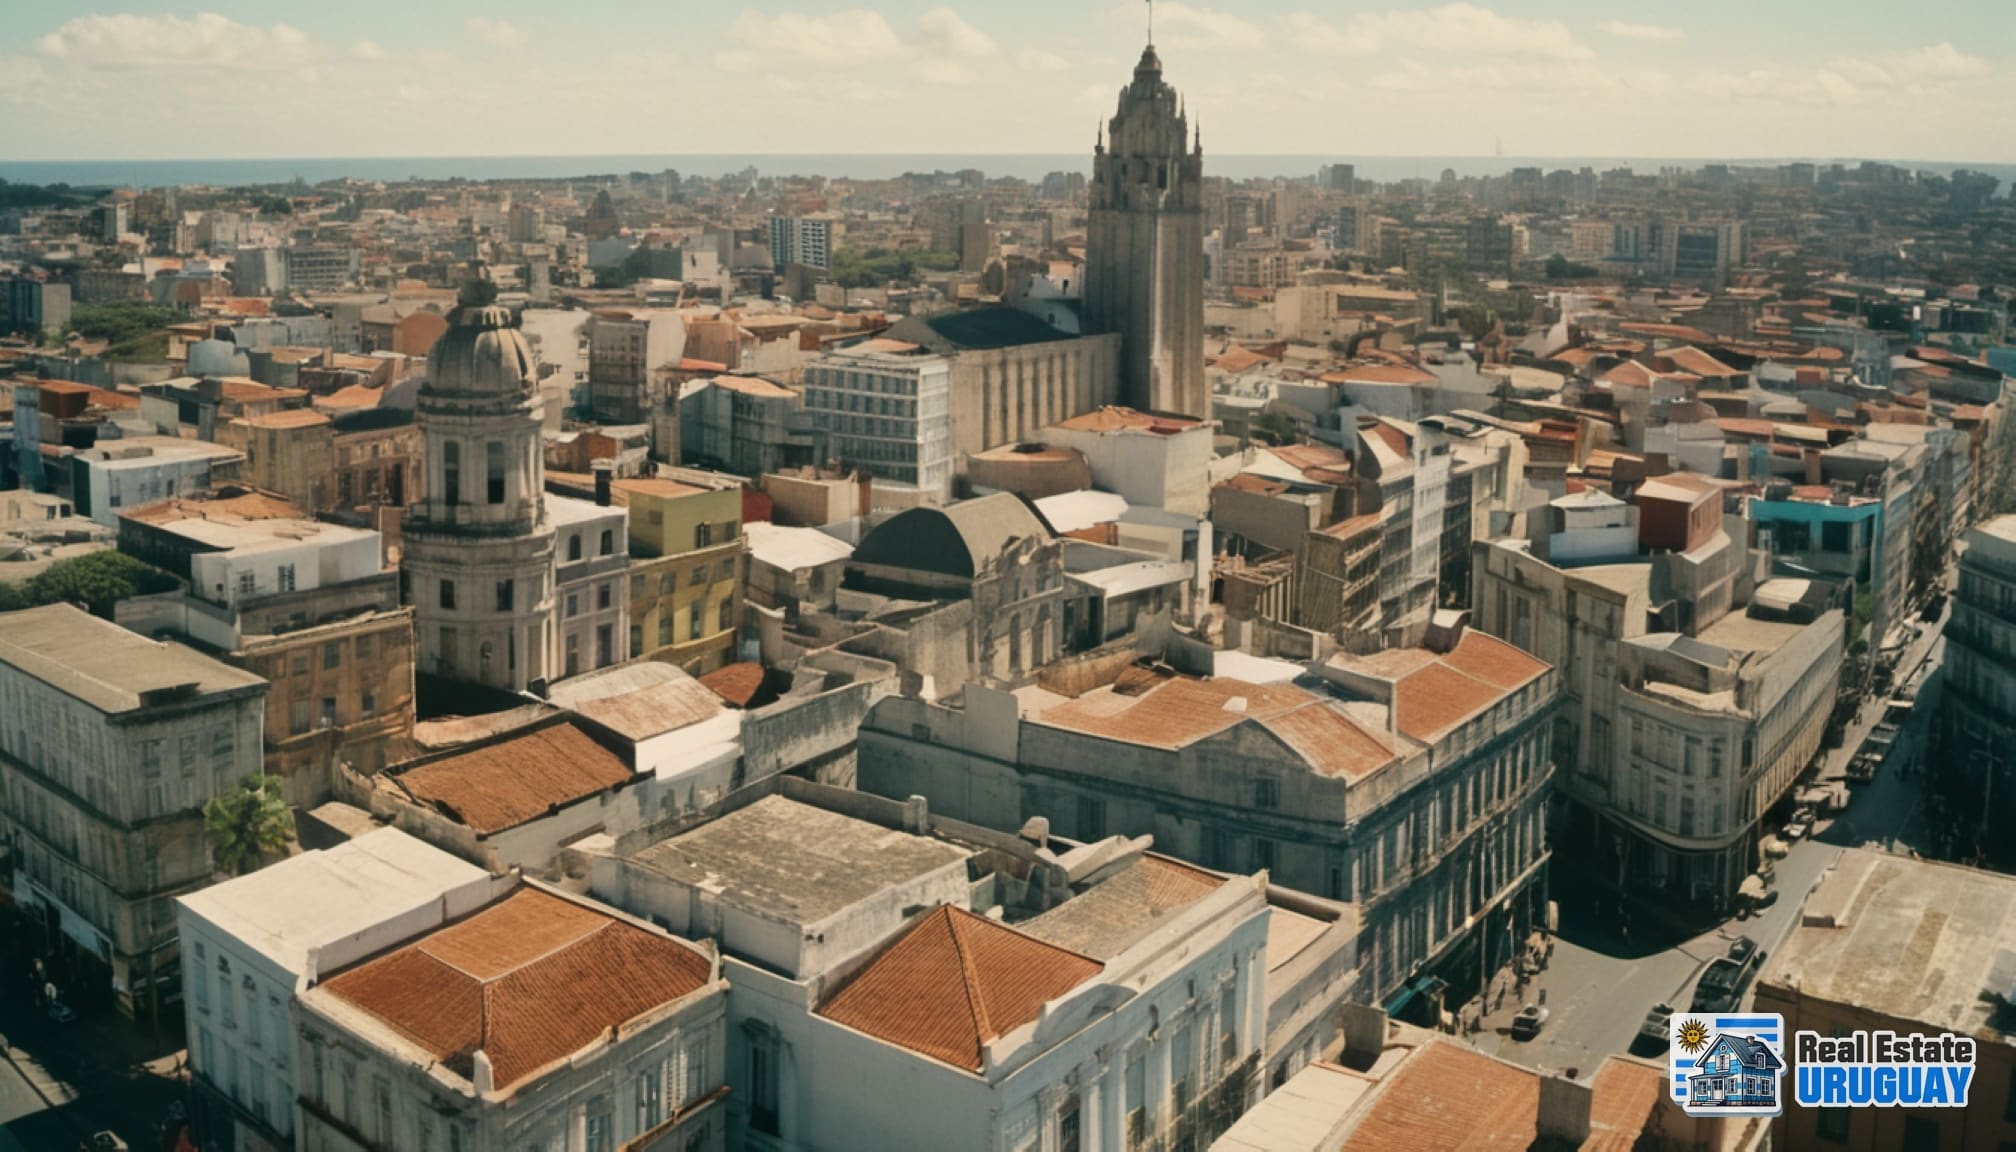 Uruguay architectural landscape 003